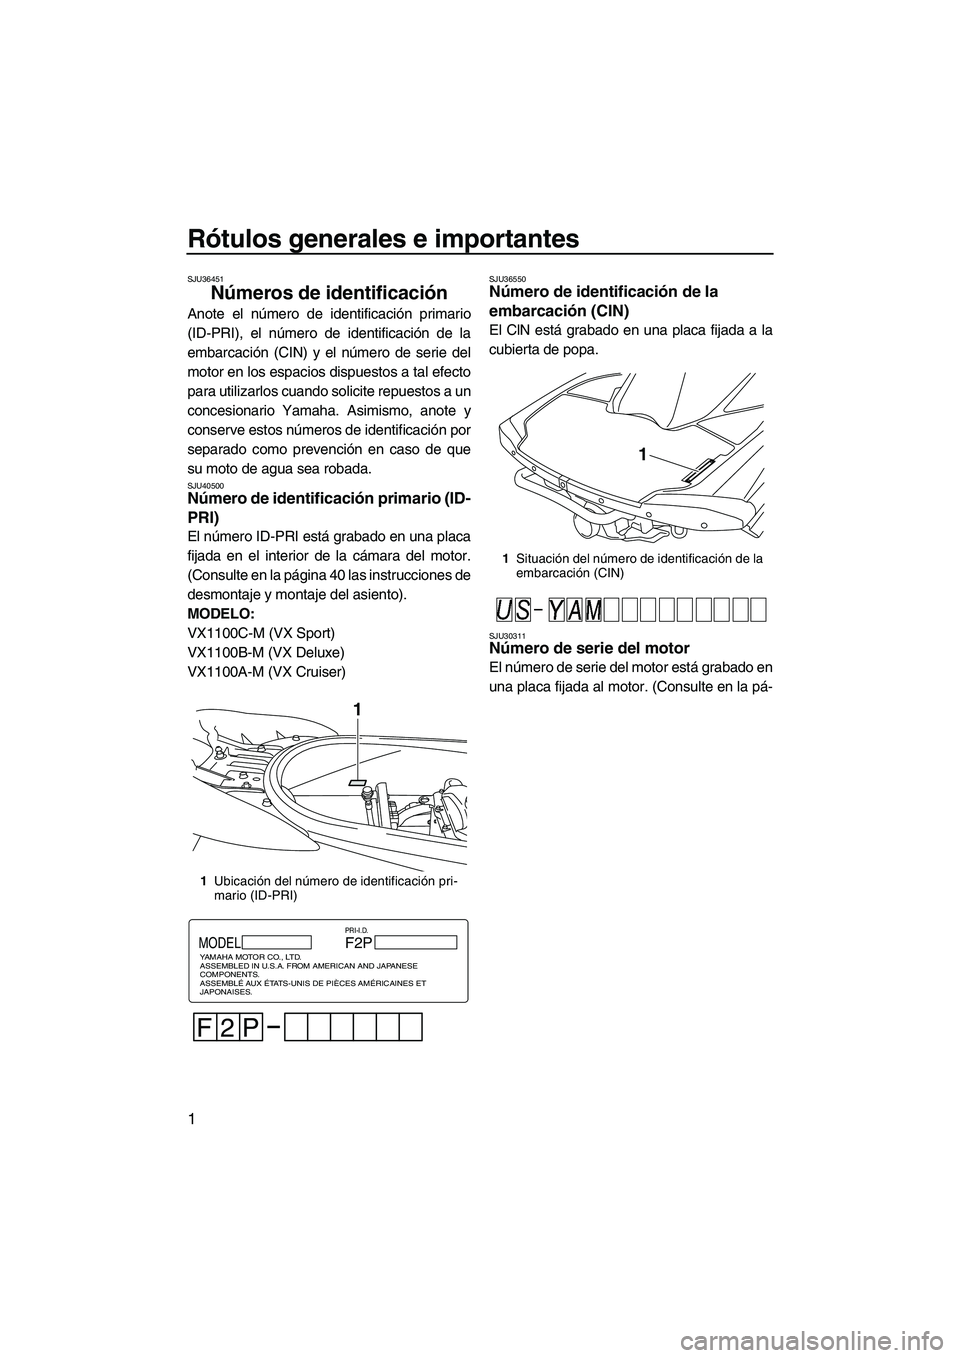 YAMAHA VX CRUISER 2013  Manuale de Empleo (in Spanish) Rótulos generales e importantes
1
SJU36451
Números de identificación 
Anote el número de identificación primario
(ID-PRI), el número de identificación de la
embarcación (CIN) y el número de s